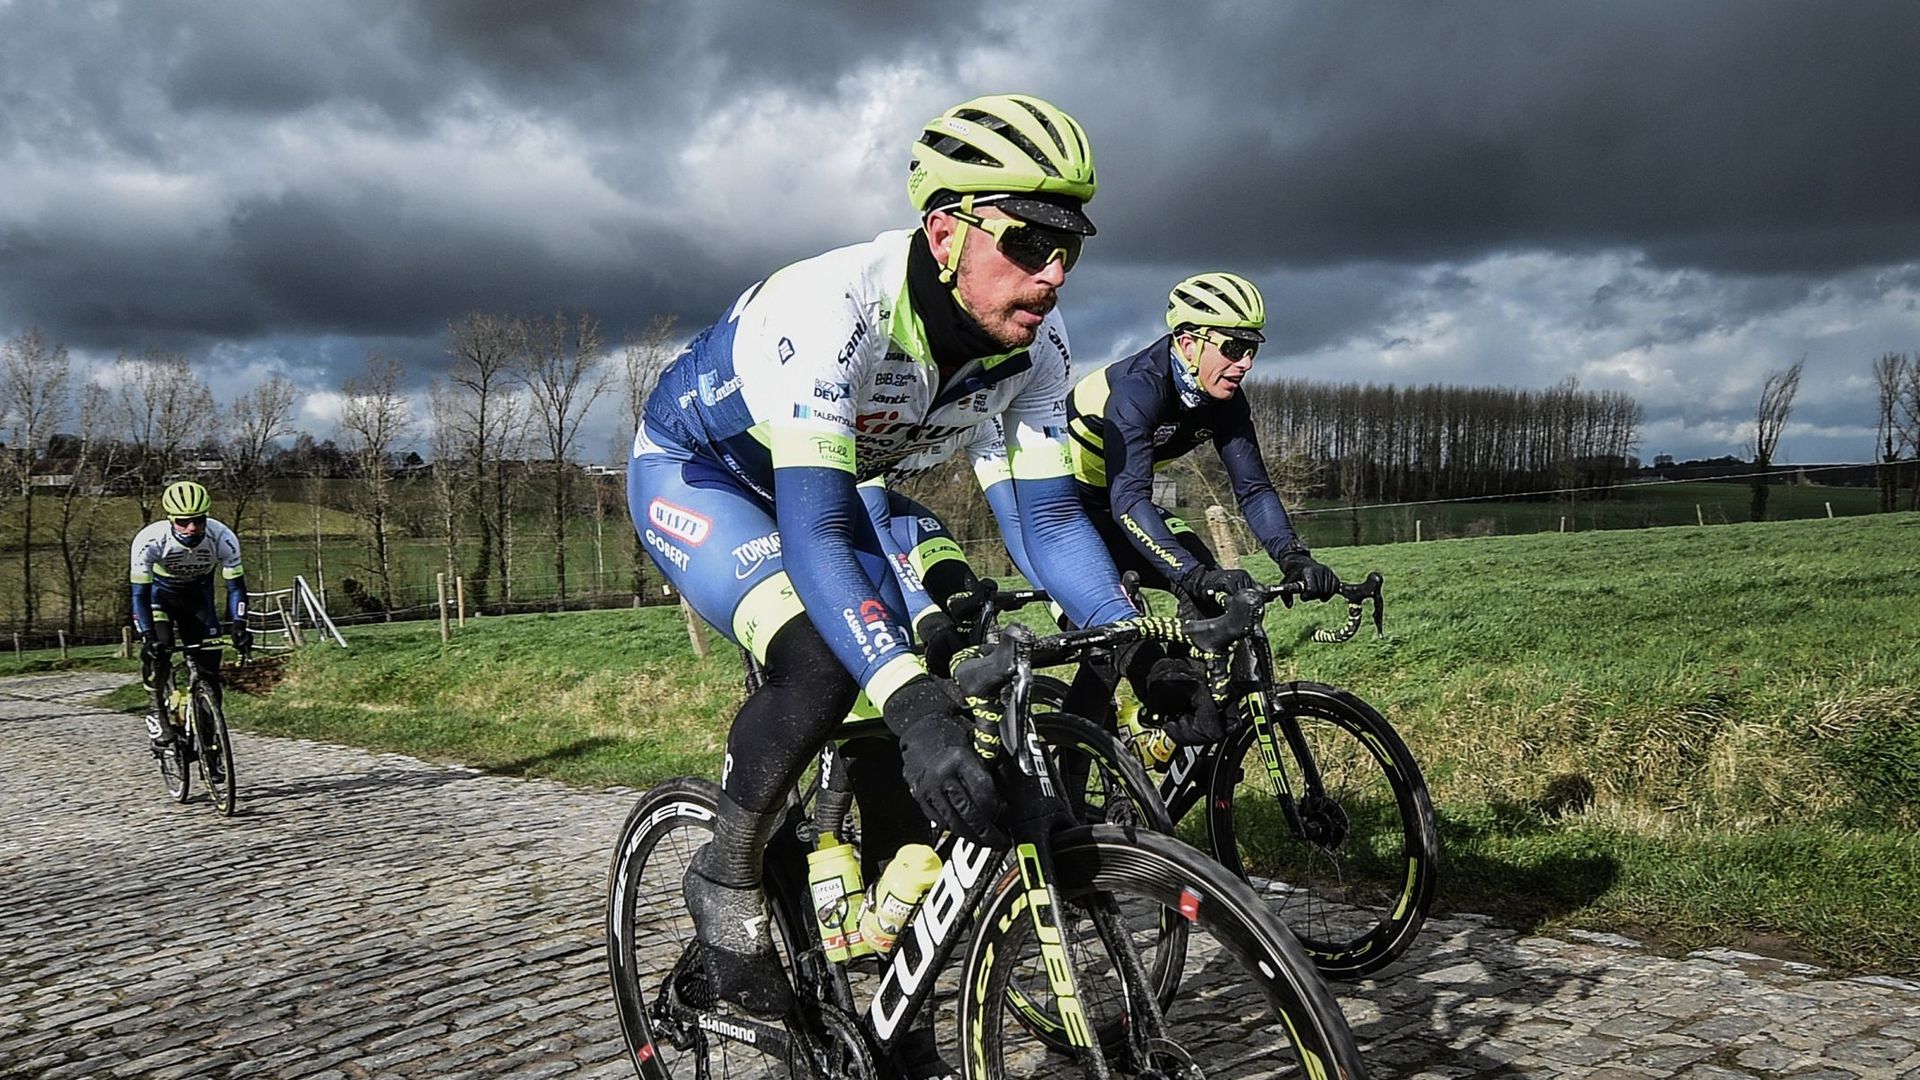 L'équipe cycliste procontinentale Circus - Wanty Gobert roulera dans le World Tour dès la saison 2021. Grâce au rachat de la licence de la formation CCC, l'équipe wallonne va faire son entrée dans la division 1 du cyclisme.   